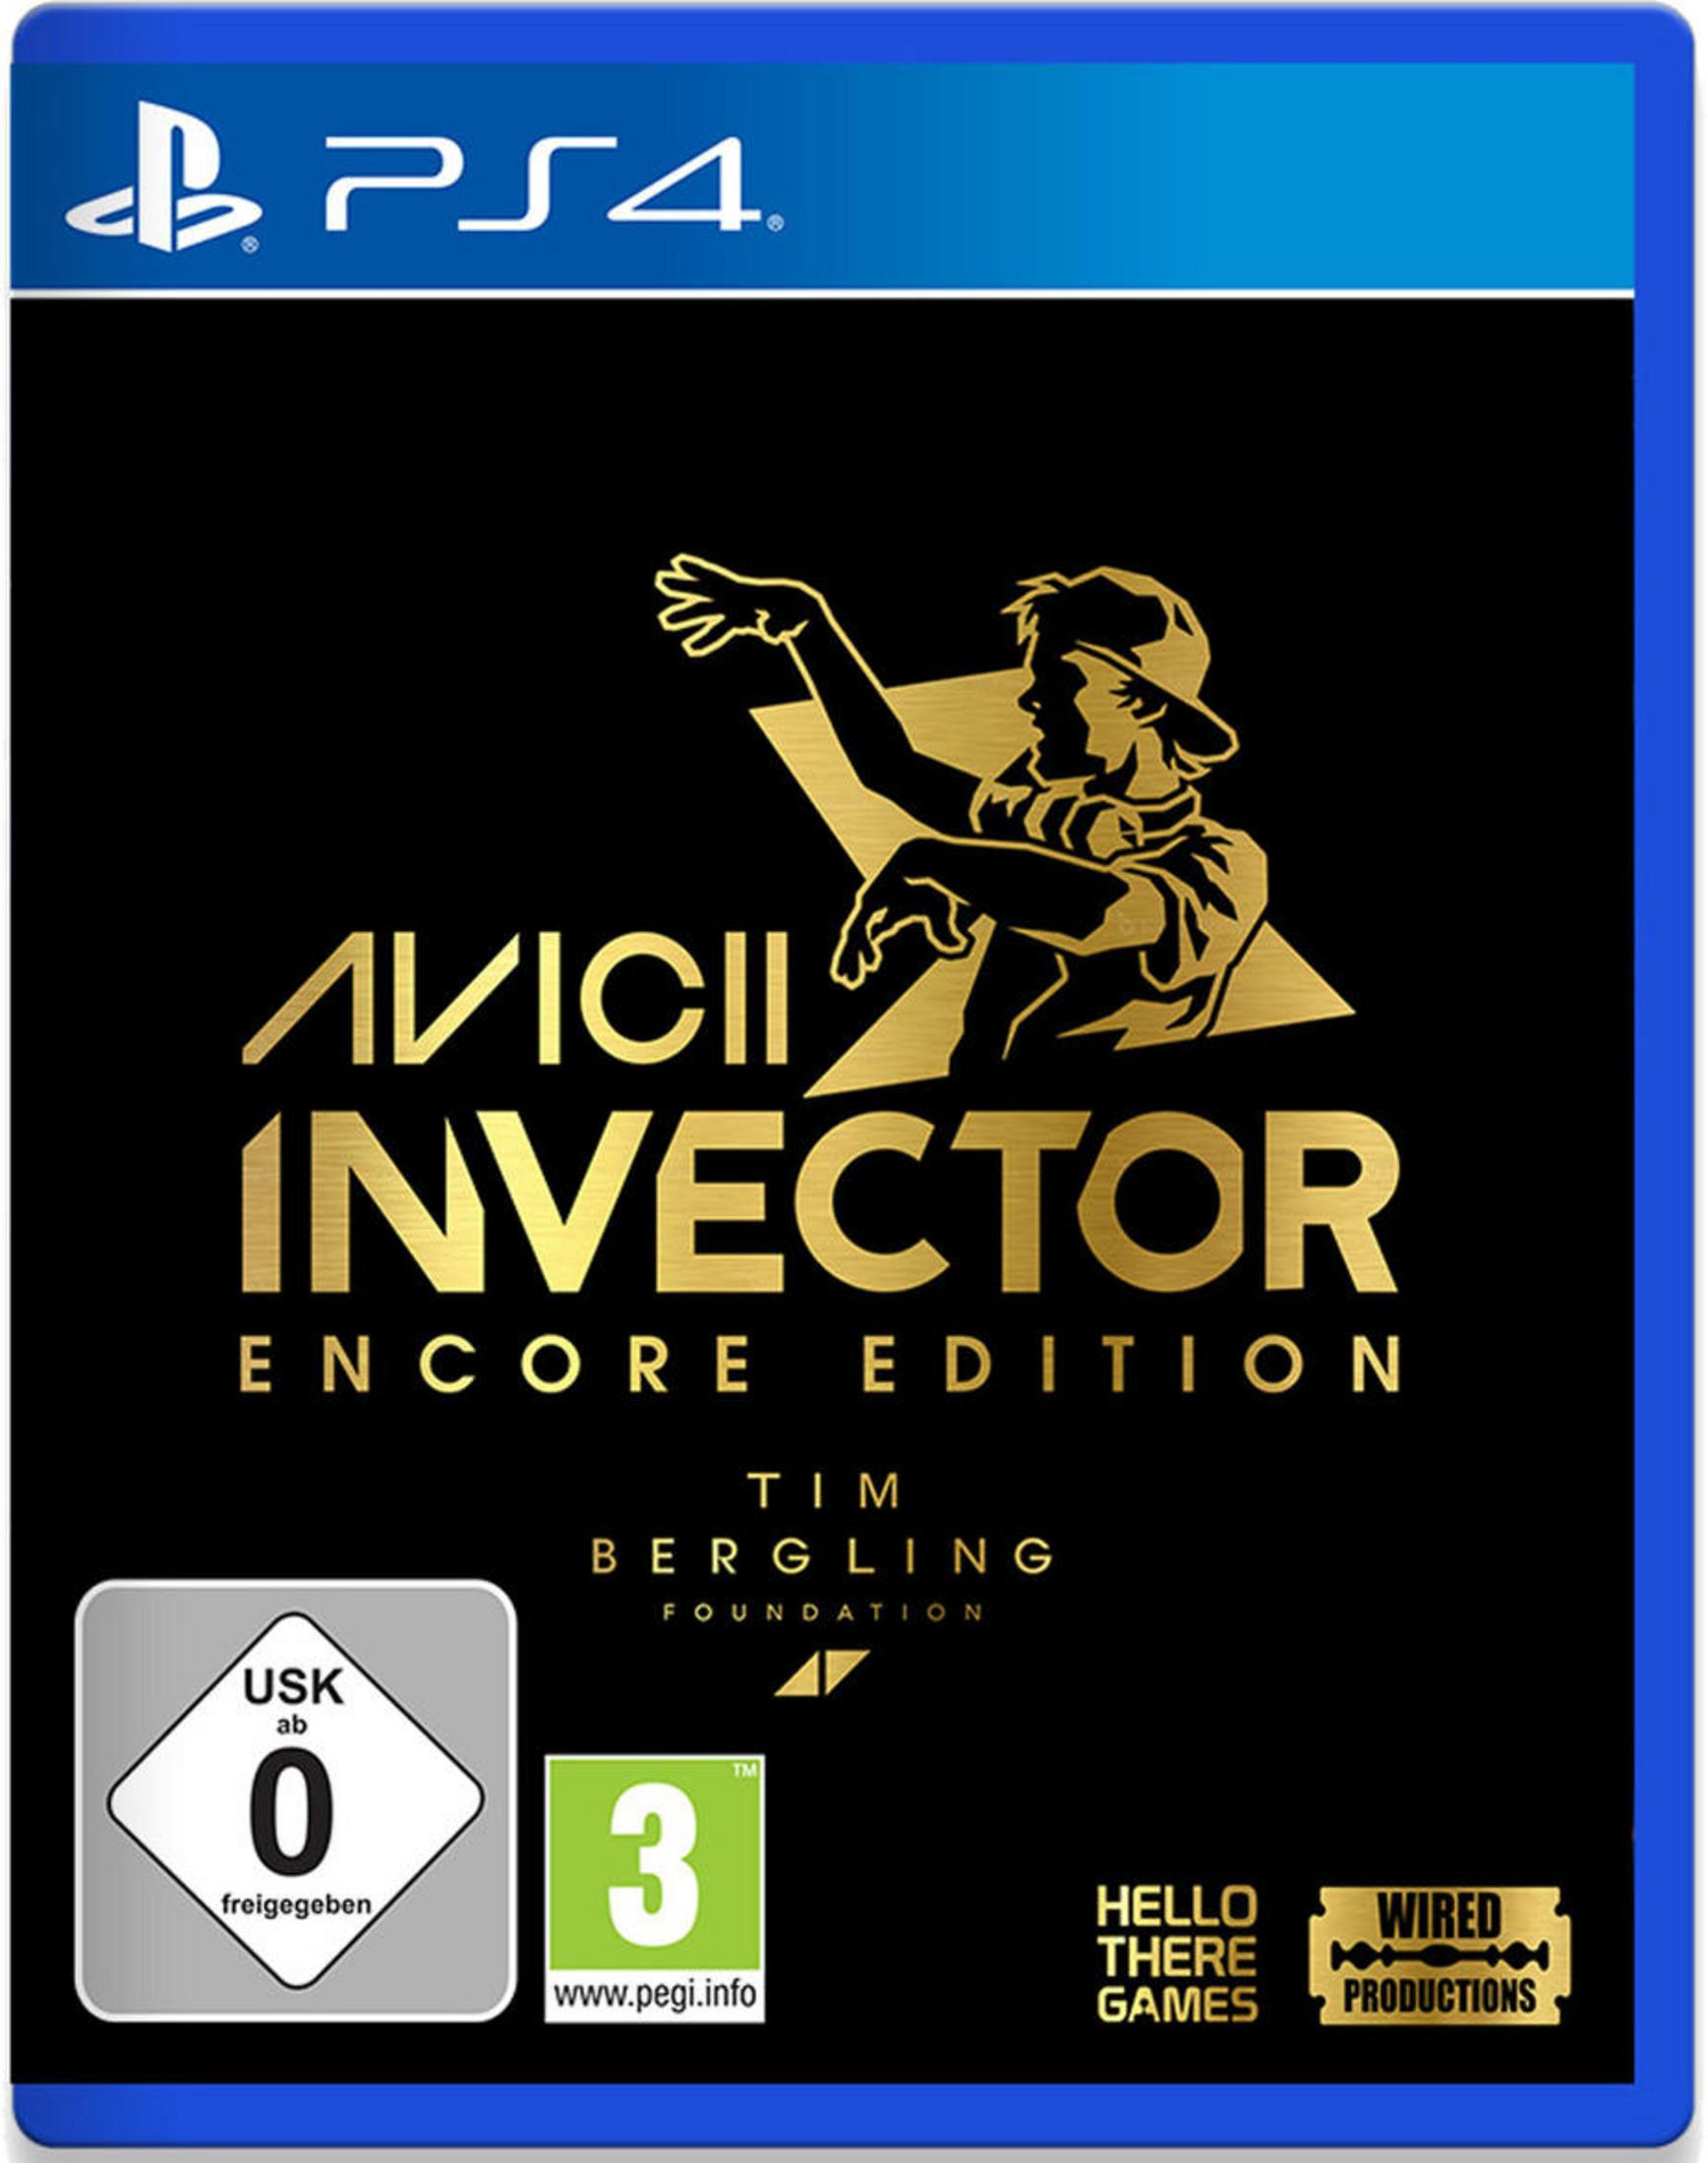 Invector Edition [PlayStation AVICII 4] - Encore